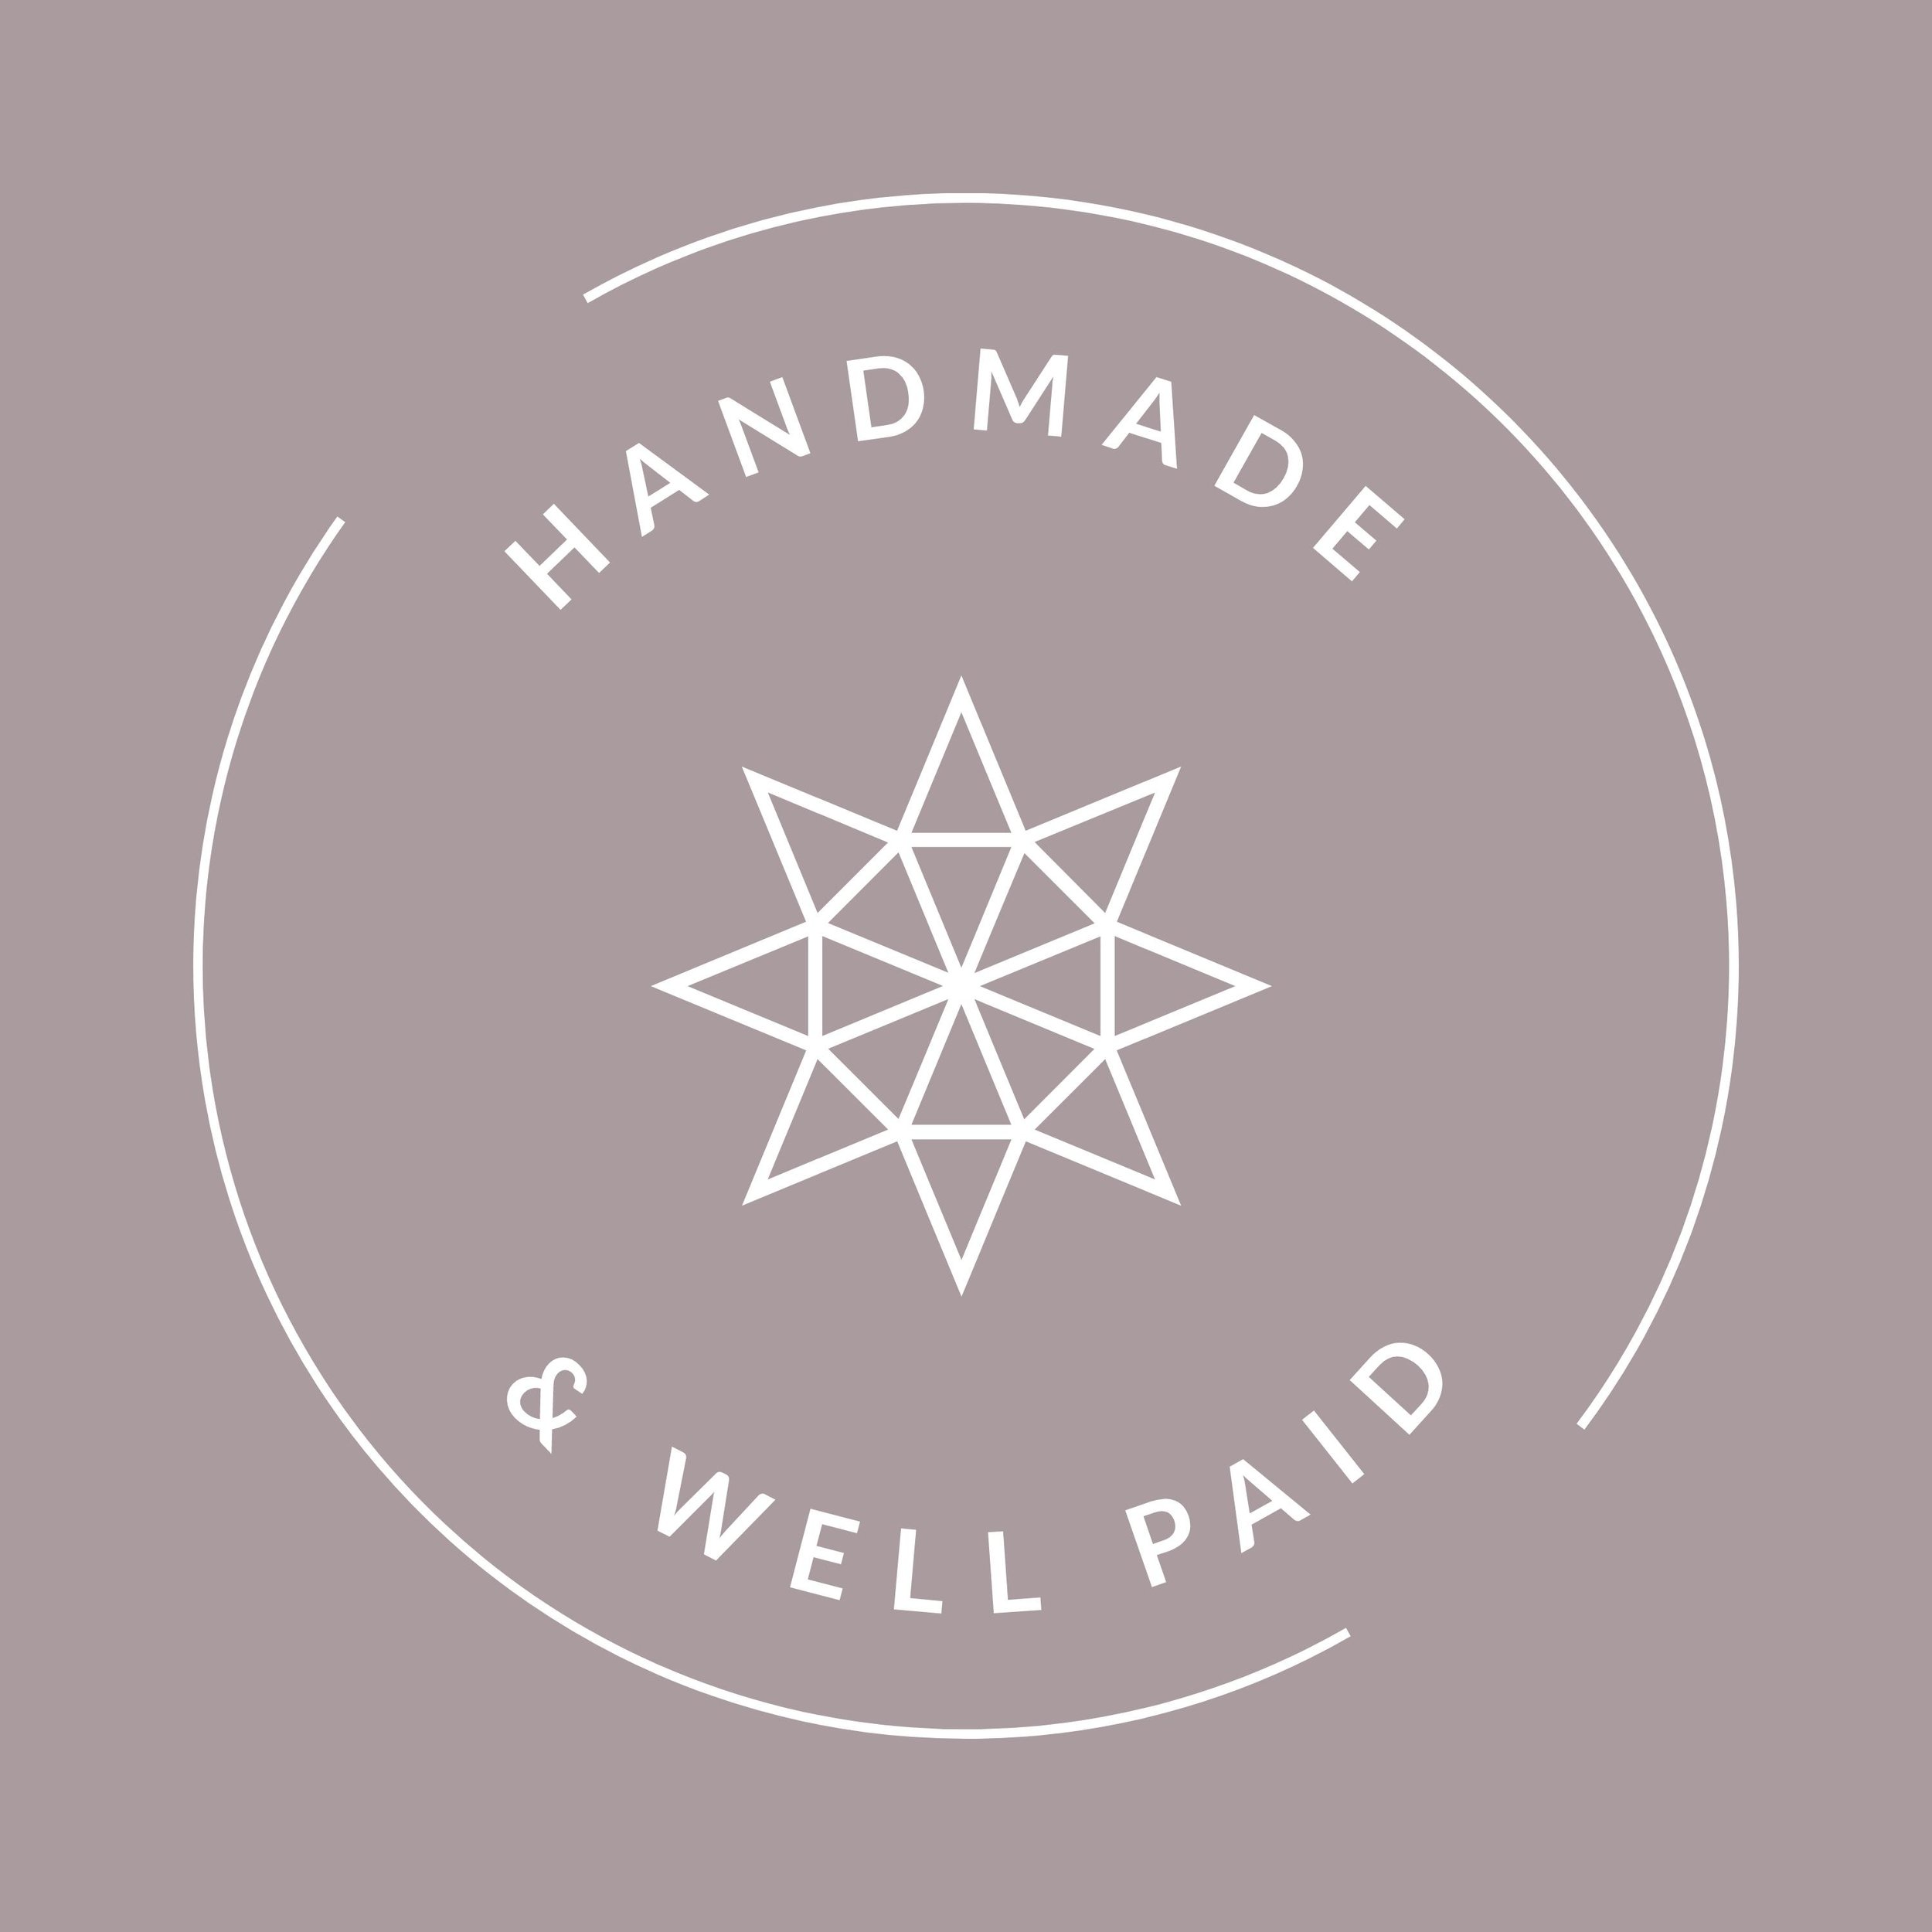 HandmadeWellPaid9.jpg